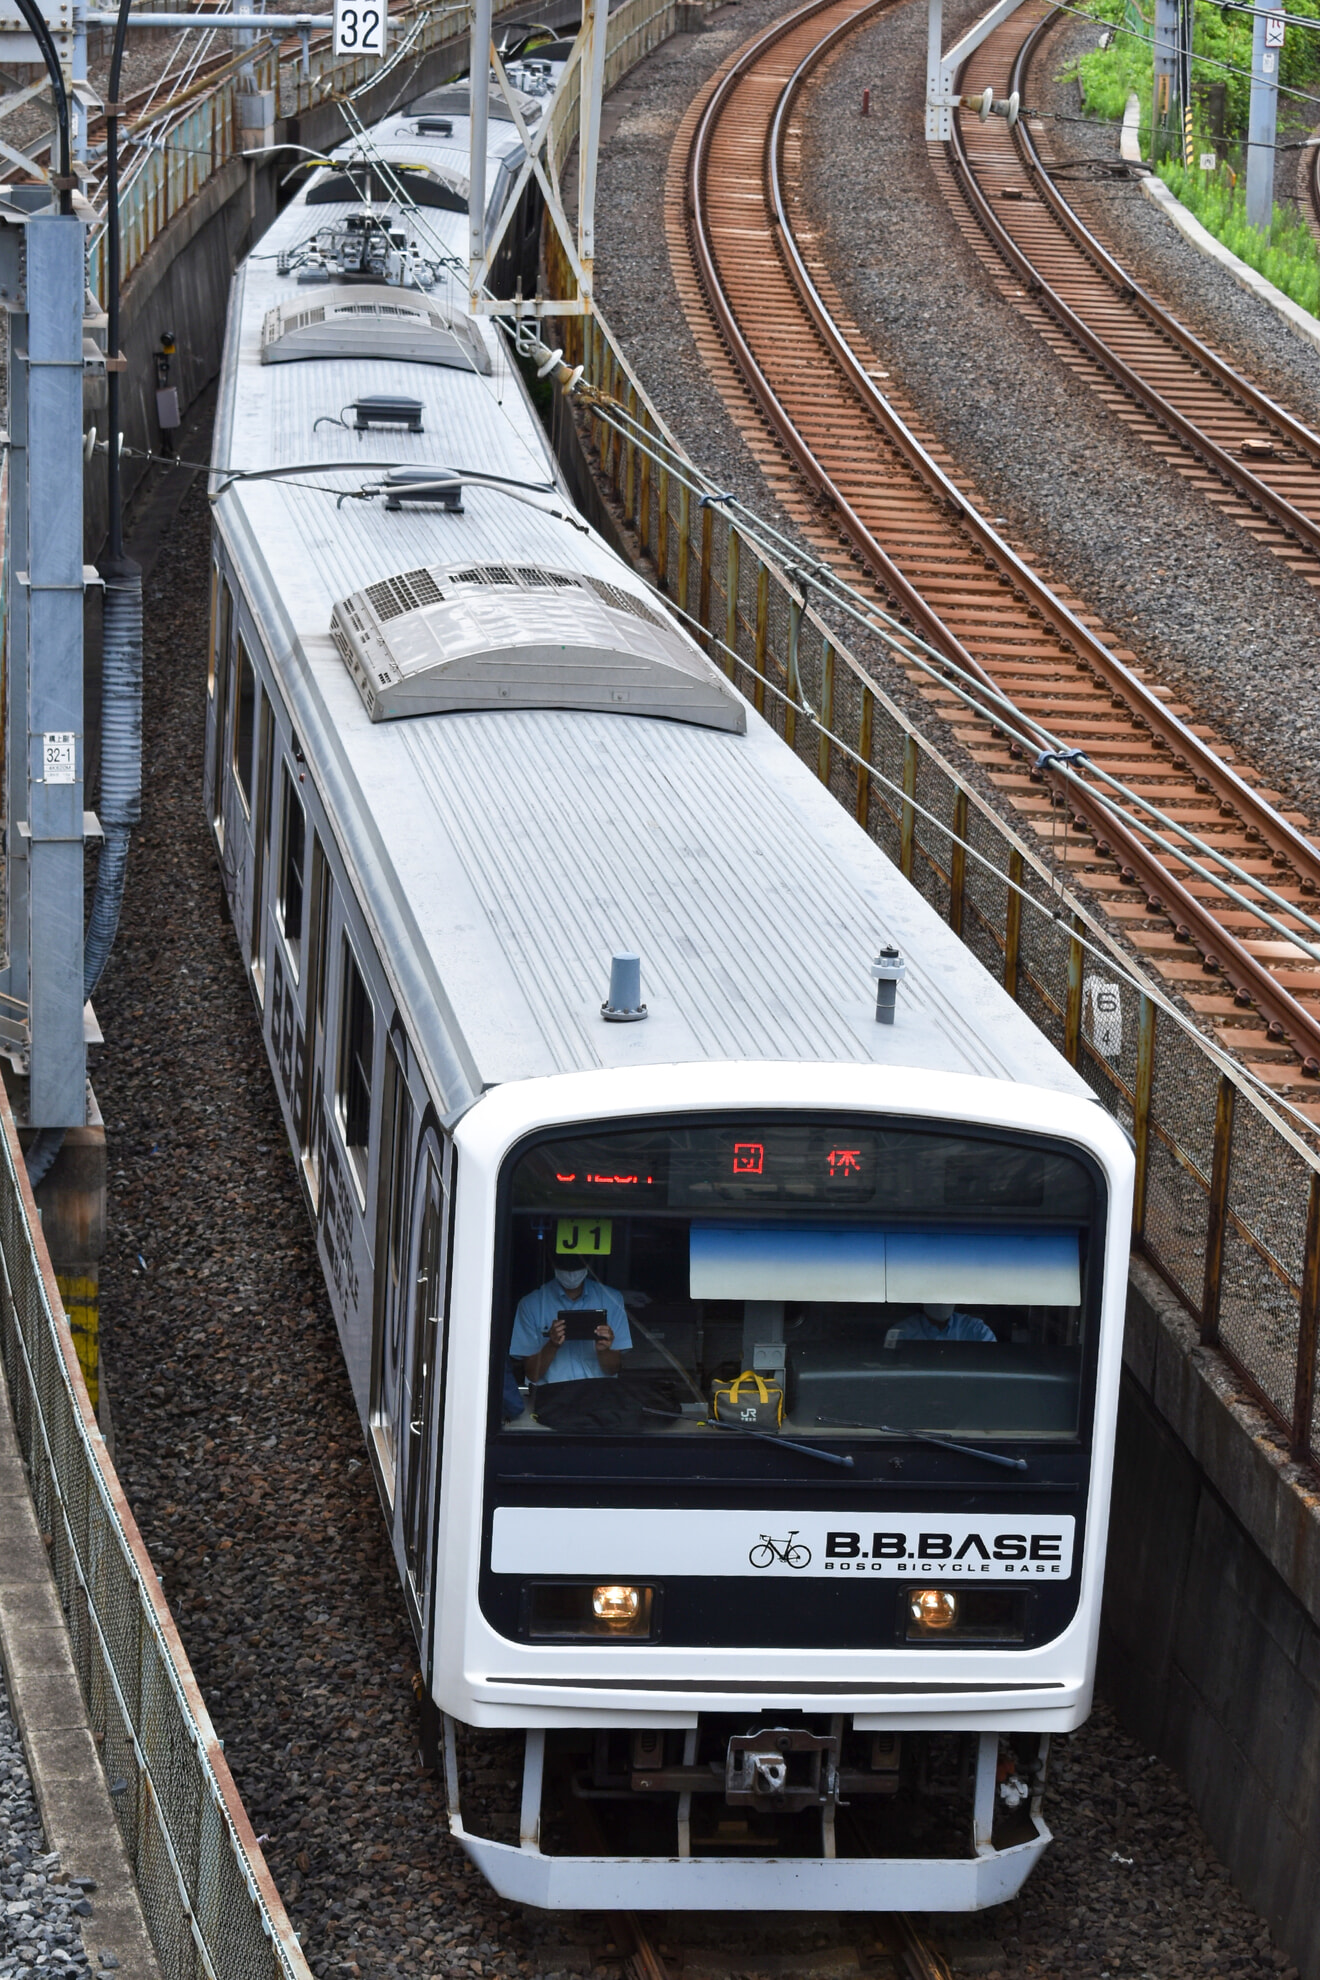 【JR東】「B.B.BASE」で行く常磐・成田線の旅「夏休み自由研究号」』ツアー開催の拡大写真